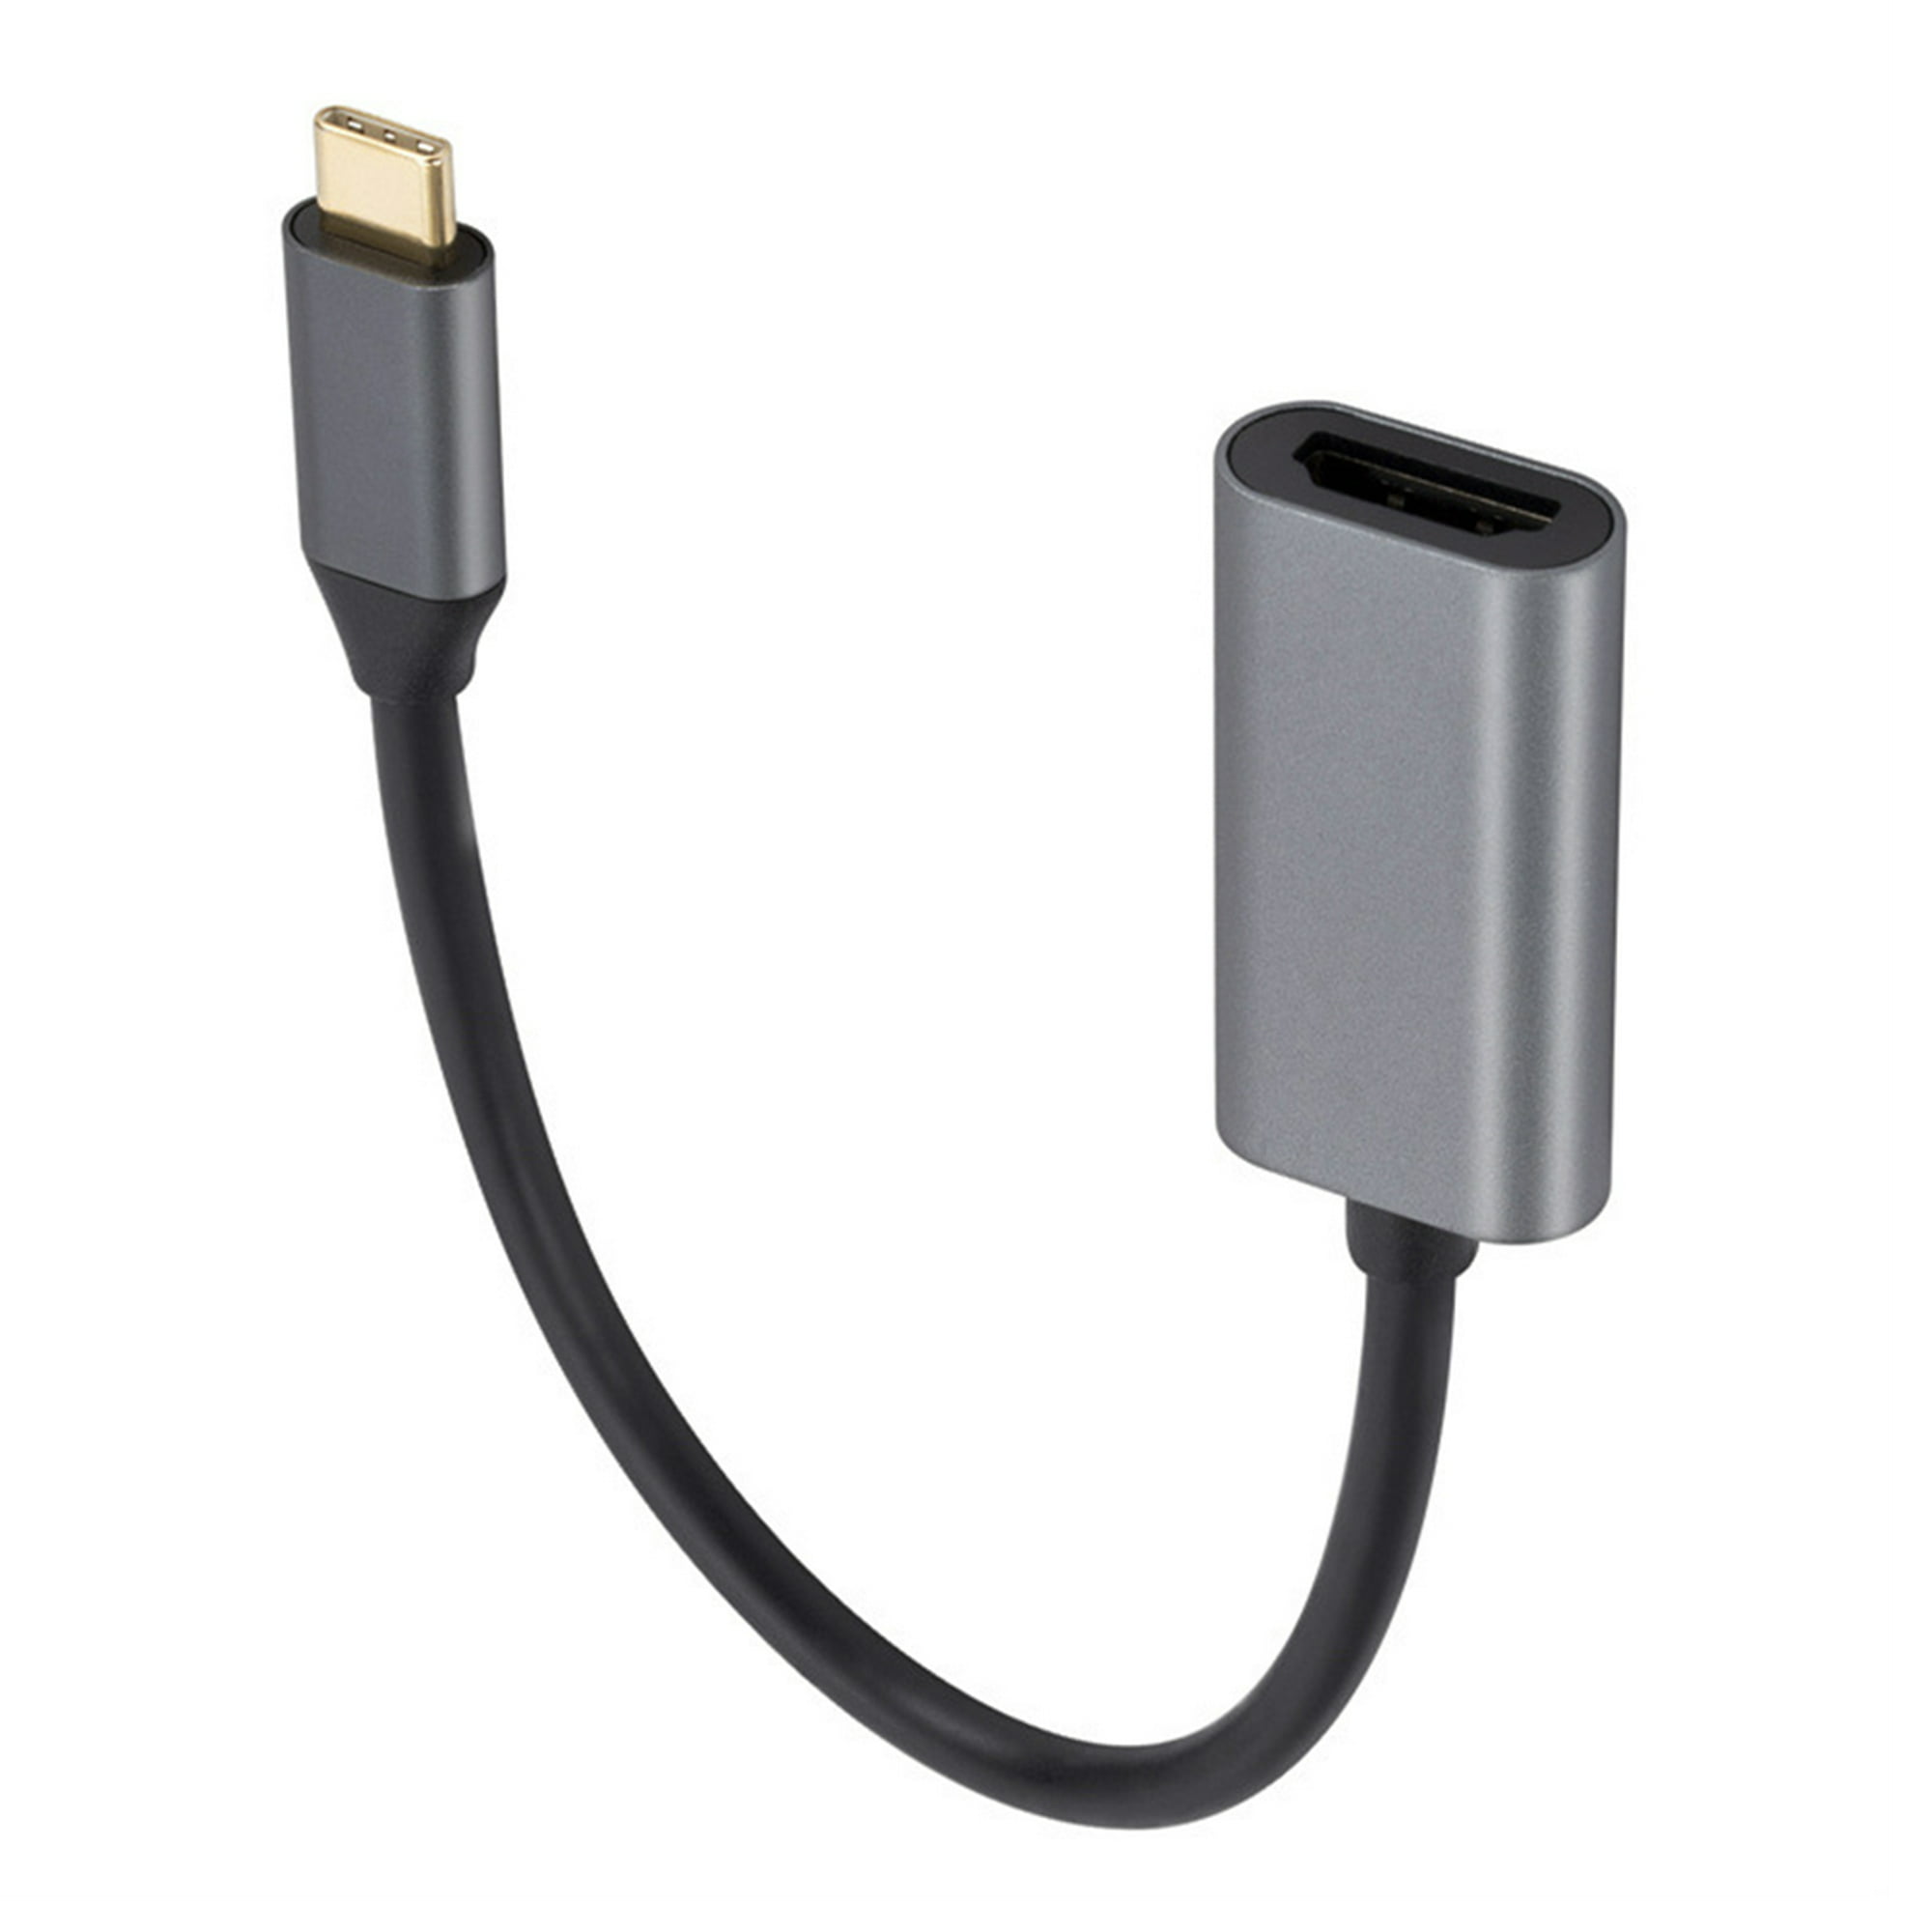 Ripley - ADAPTADOR USB-C A HDMI USB 3.1 TIPO C A HDMI 4 K